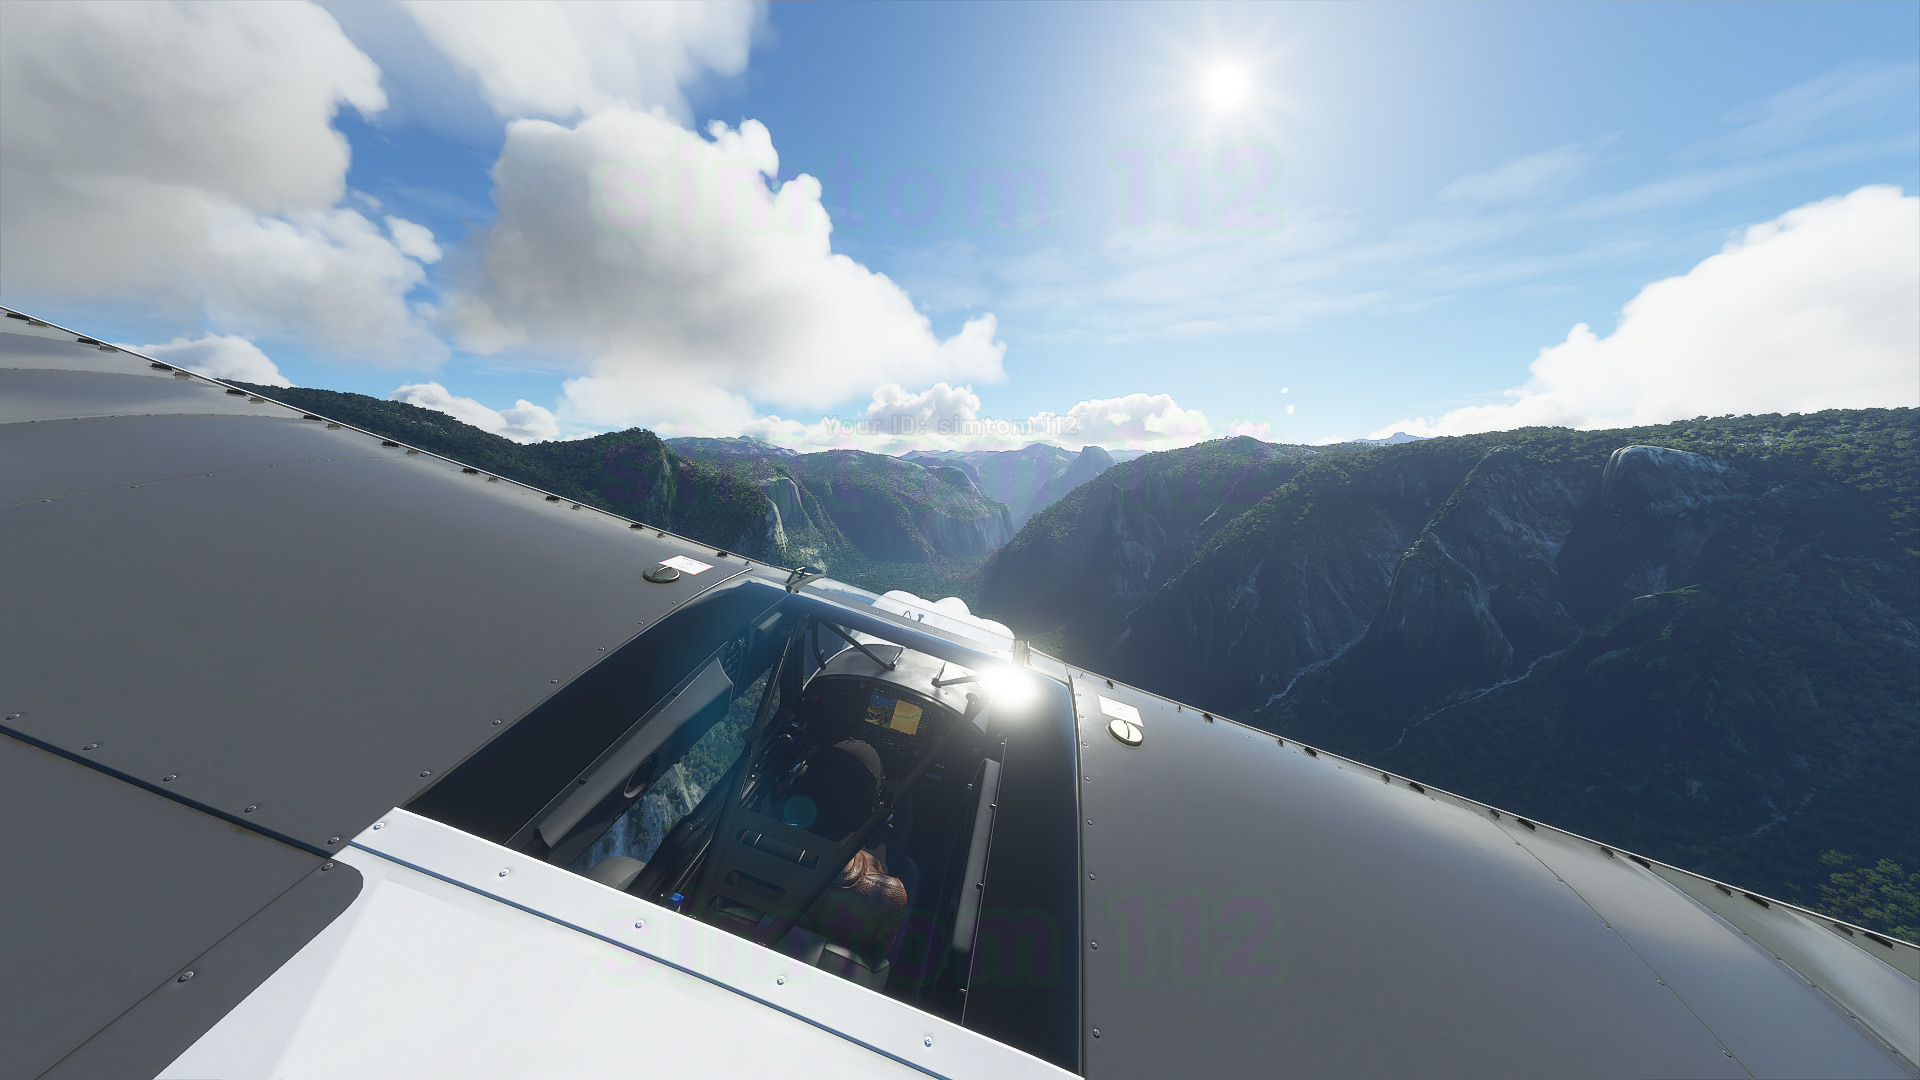 《微軟飛行模擬》新截圖和視頻展示 體積雲太美